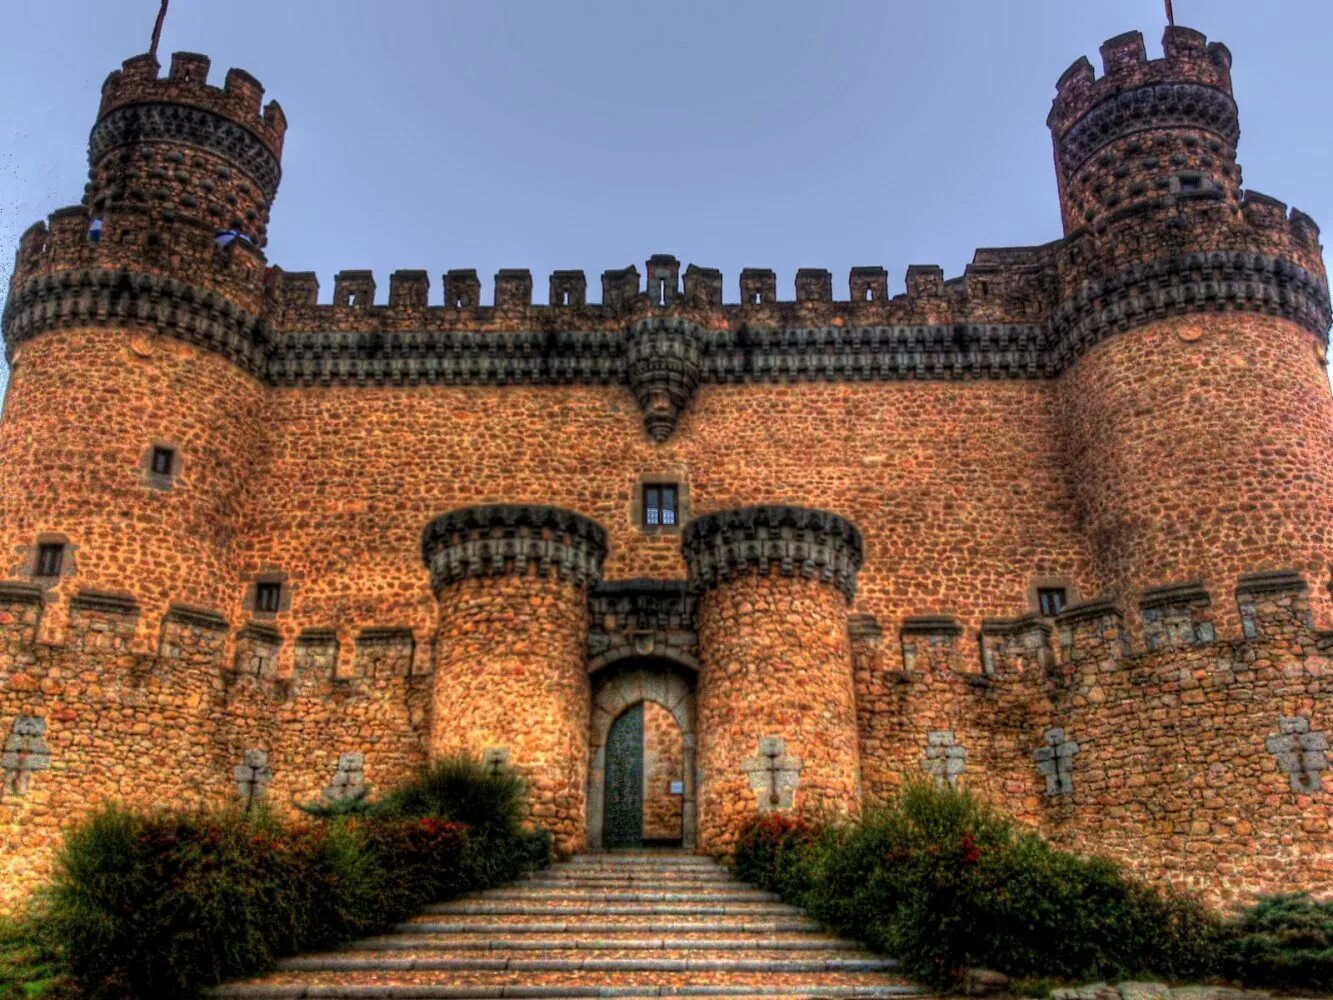 Замок Мансанарес-Эль-Реал замки Испании. Замок Мансанарес Мадрид. Мансанарес Эль реаль достопримечательности. Замок Мендоса - Мансанарес-Эль-реаль - Мадрид, Испания.. Самая крупная крепость из сохранившихся и действующих